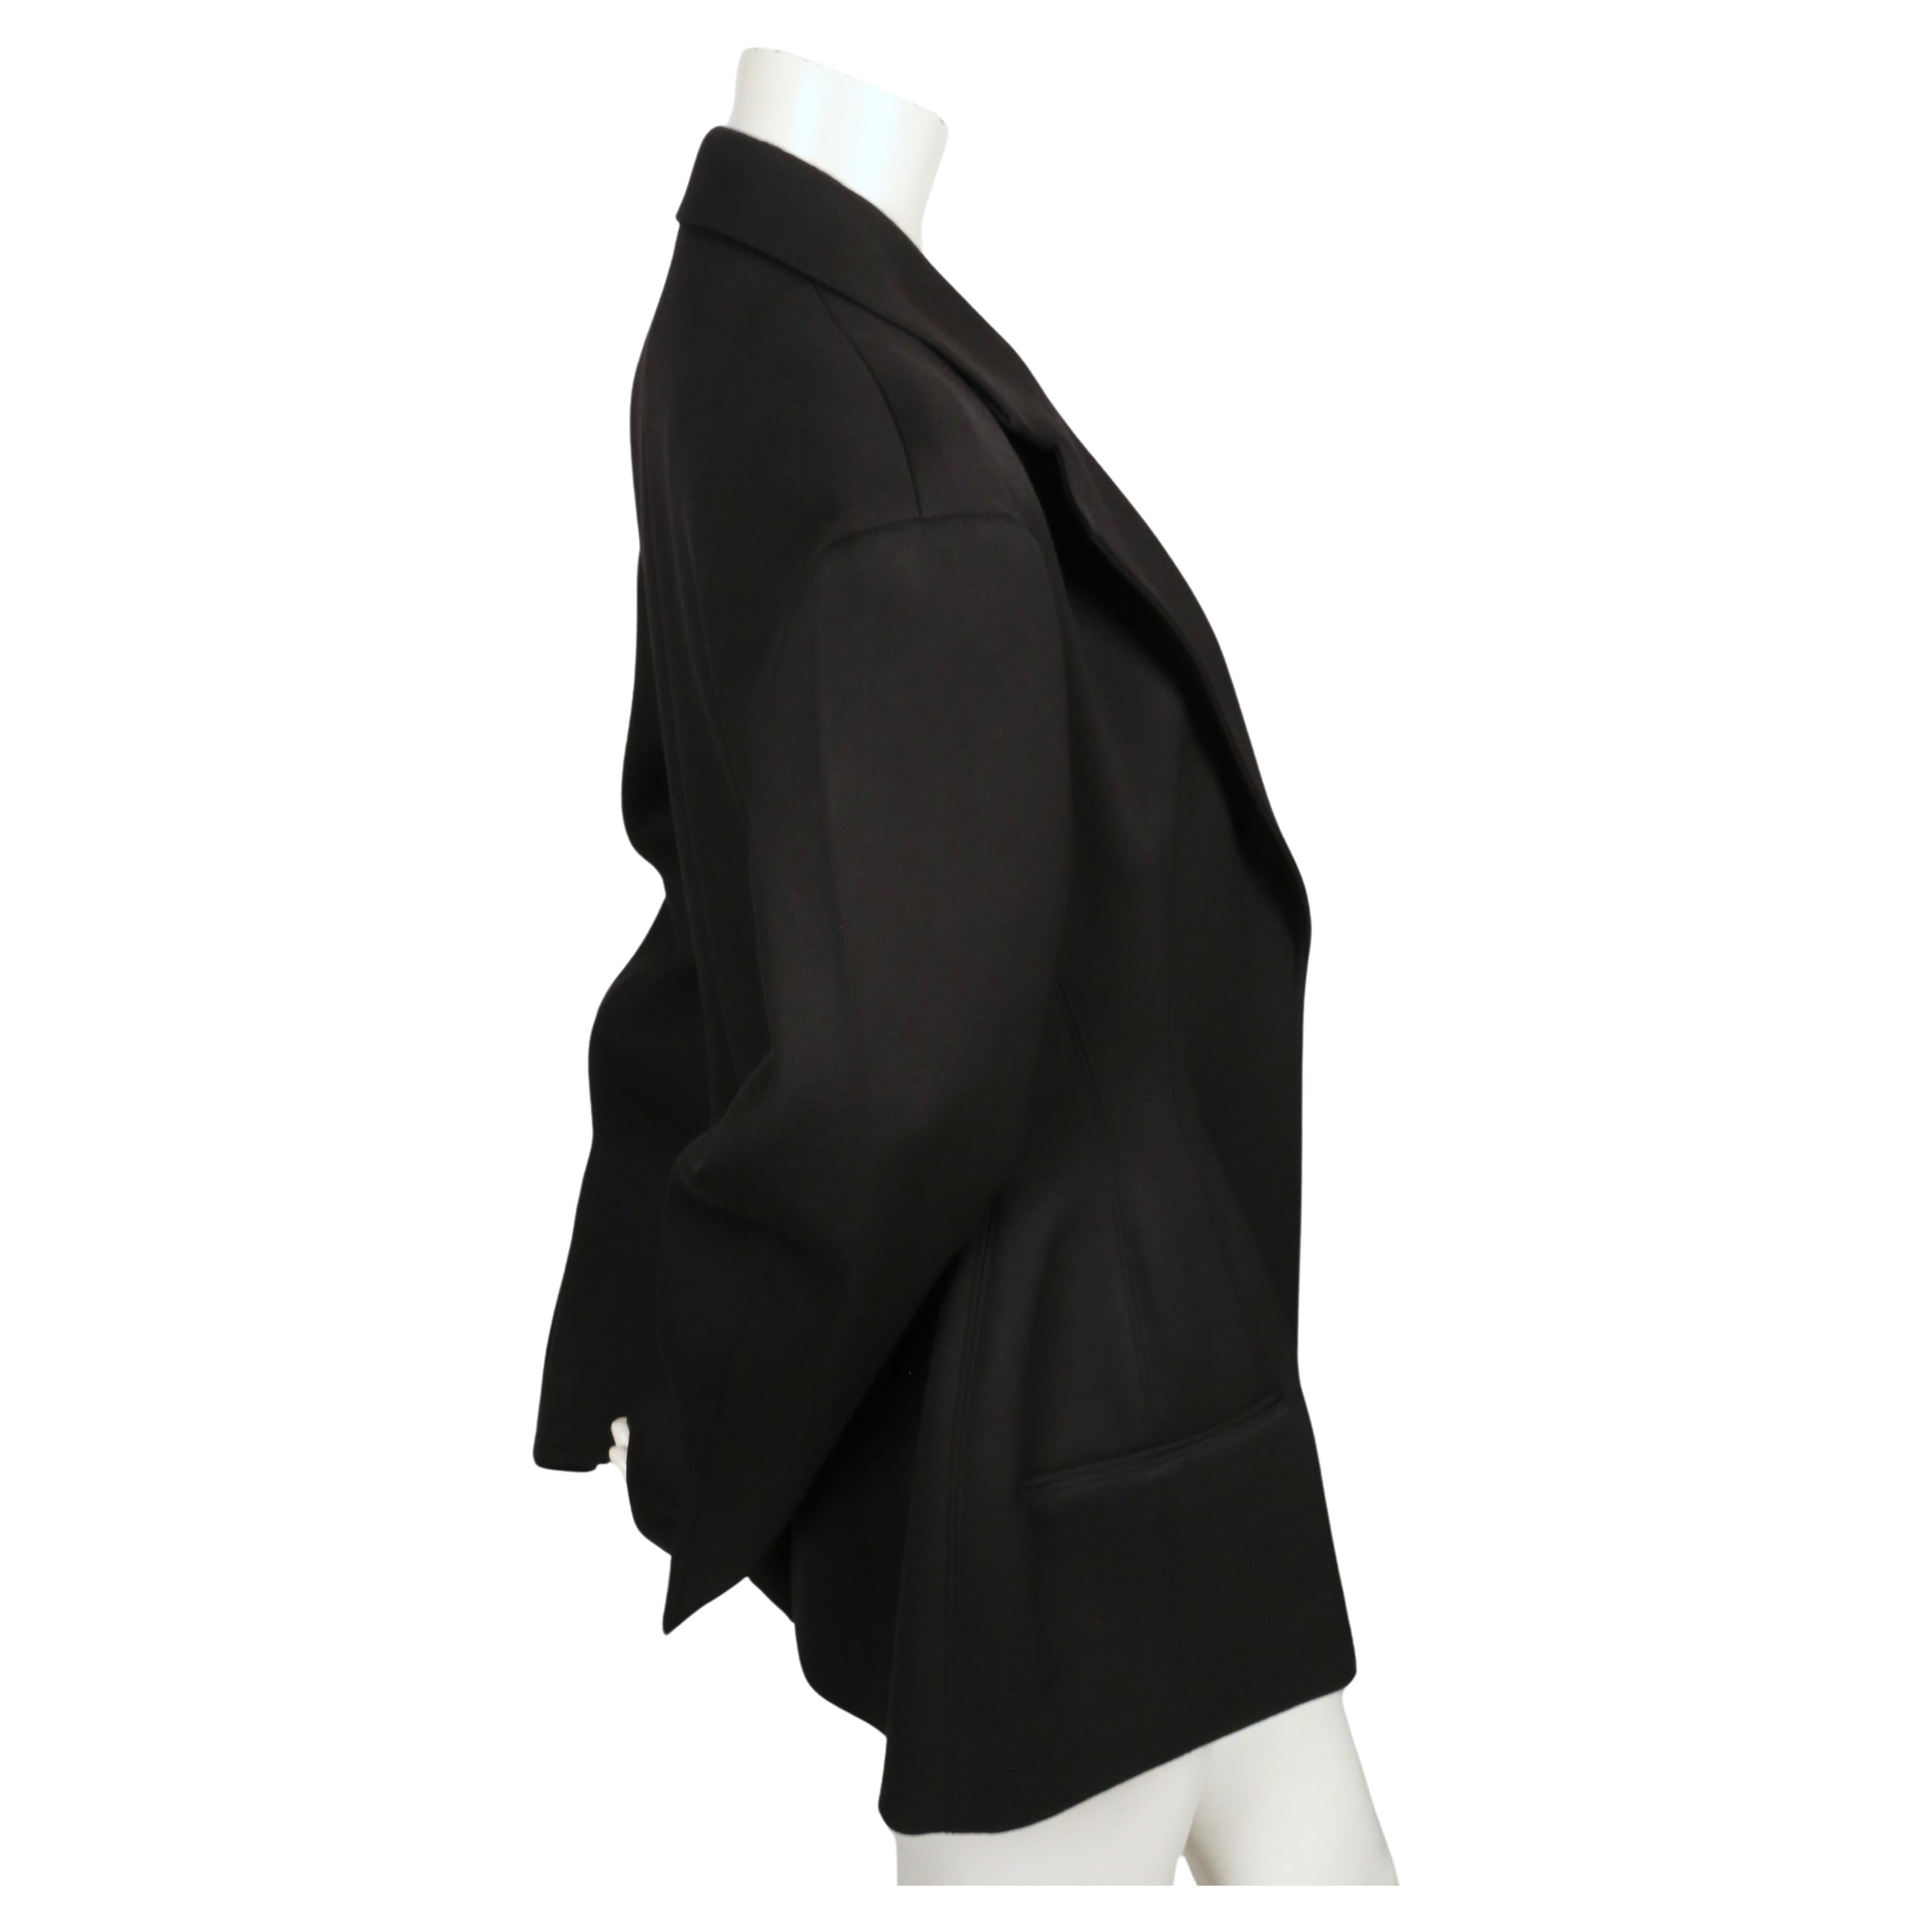 Women's or Men's CELINE by PHOEBE PHILO black hourglass jacket resort 2016